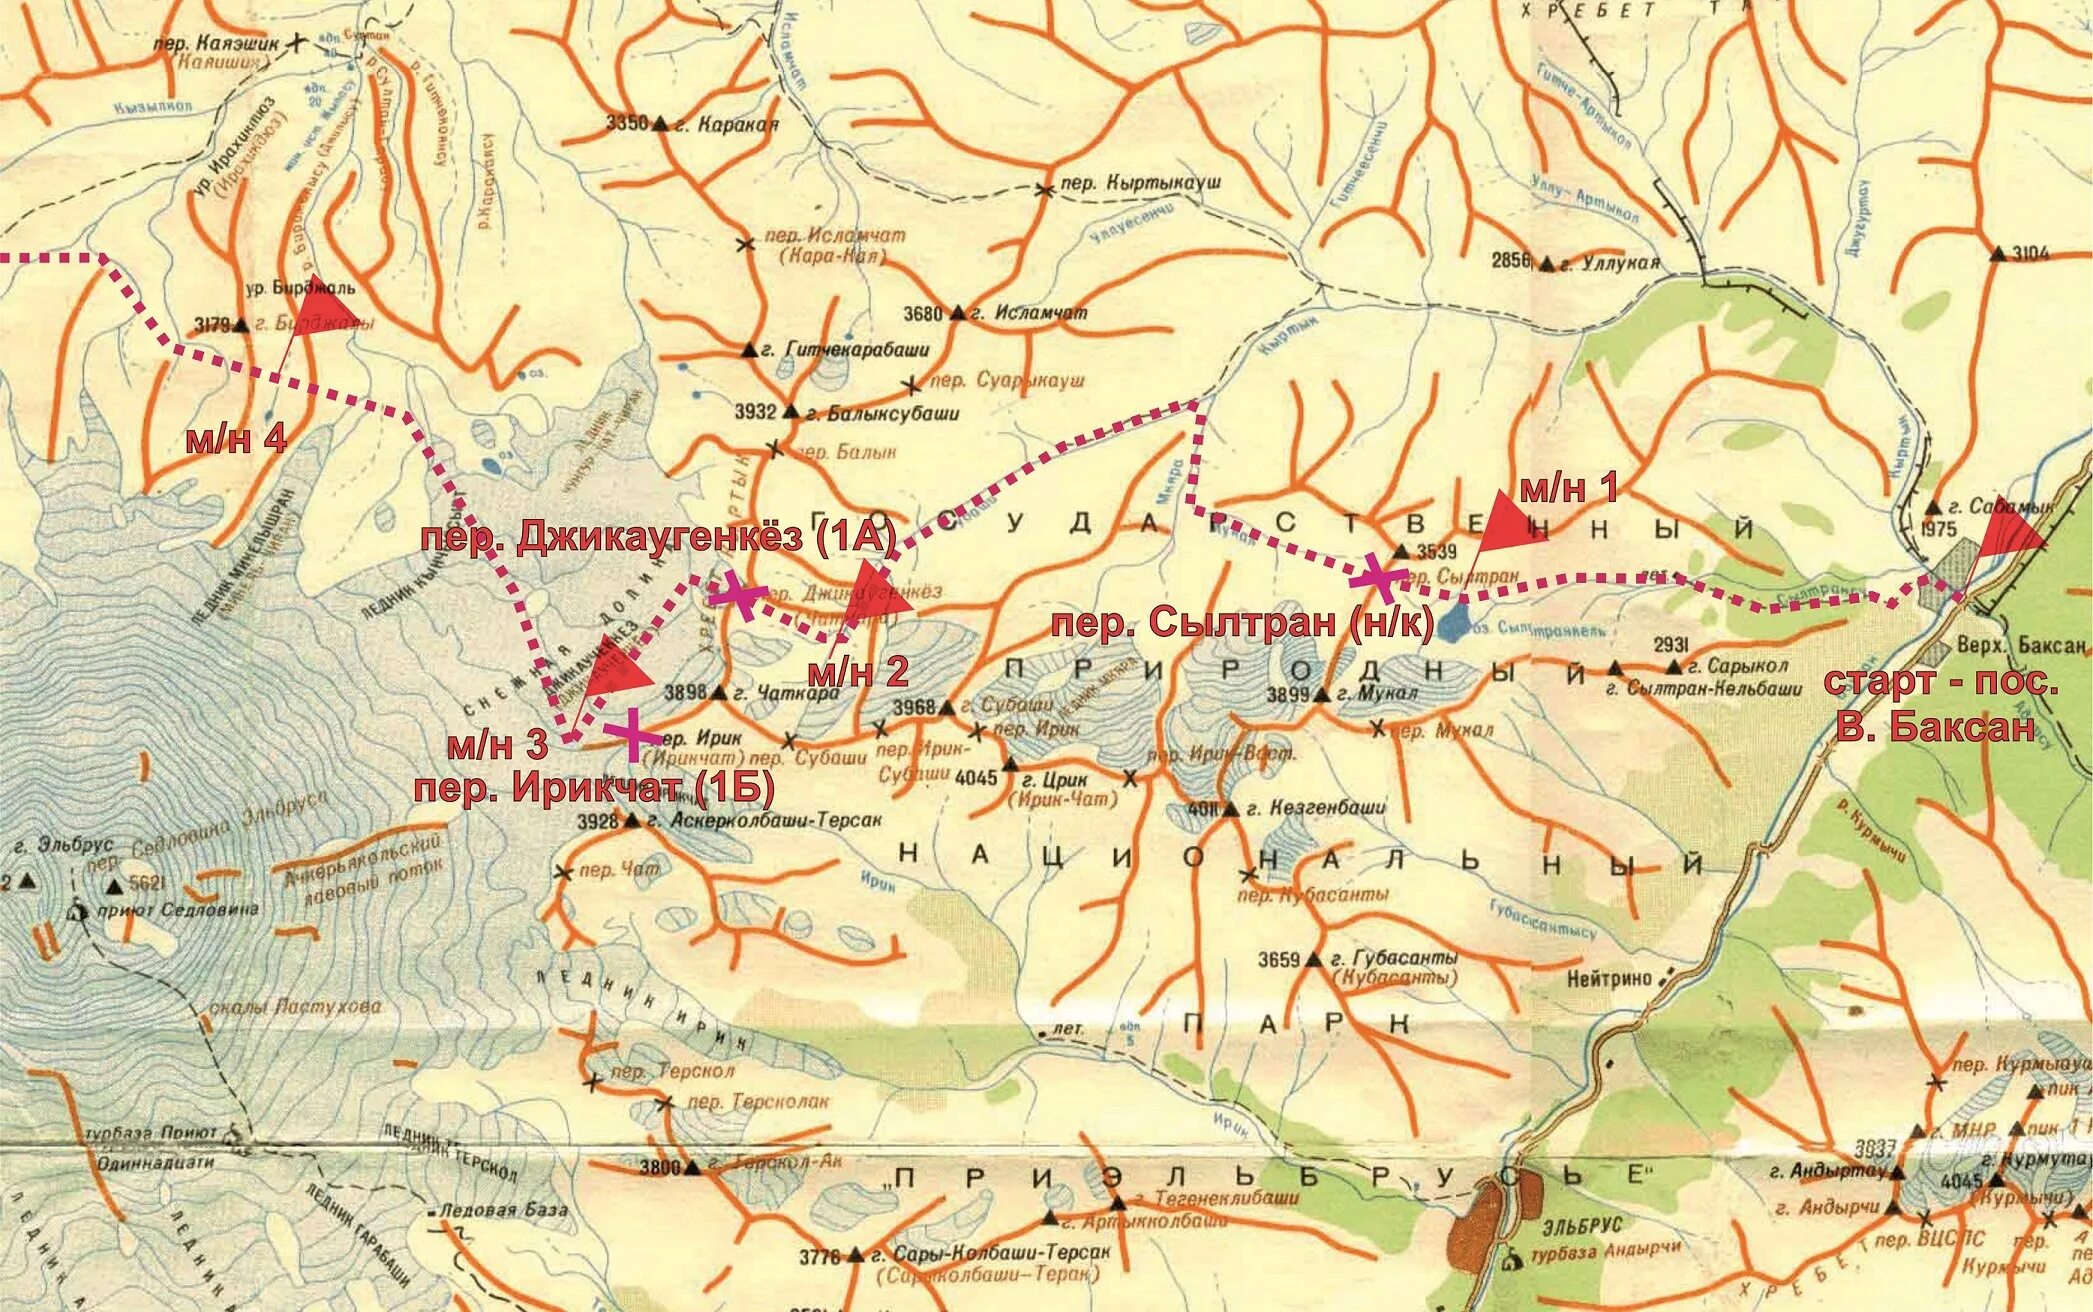 Где находится гора эльбрус на карте россии. Баксанское ущелье Приэльбрусье. Карта Эльбруса и Приэльбрусья. Терскол Кабардино-Балкария на карте. Баксанское ущелье Кабардино-Балкарии на карте.